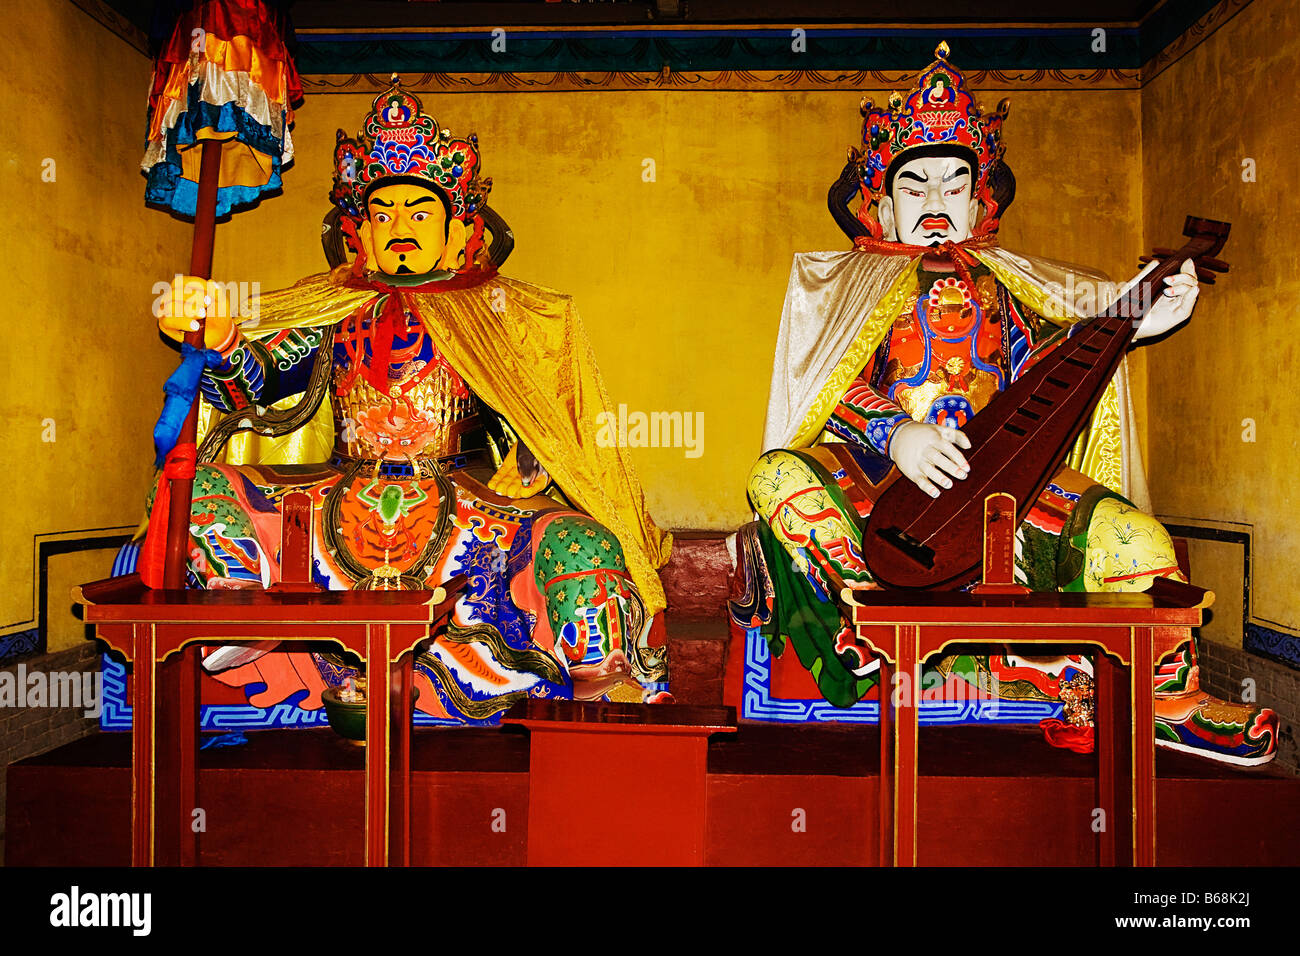 Deux statues dans un temple, Temple Da Zhao, Hohhot, Inner Mongolia, China Banque D'Images